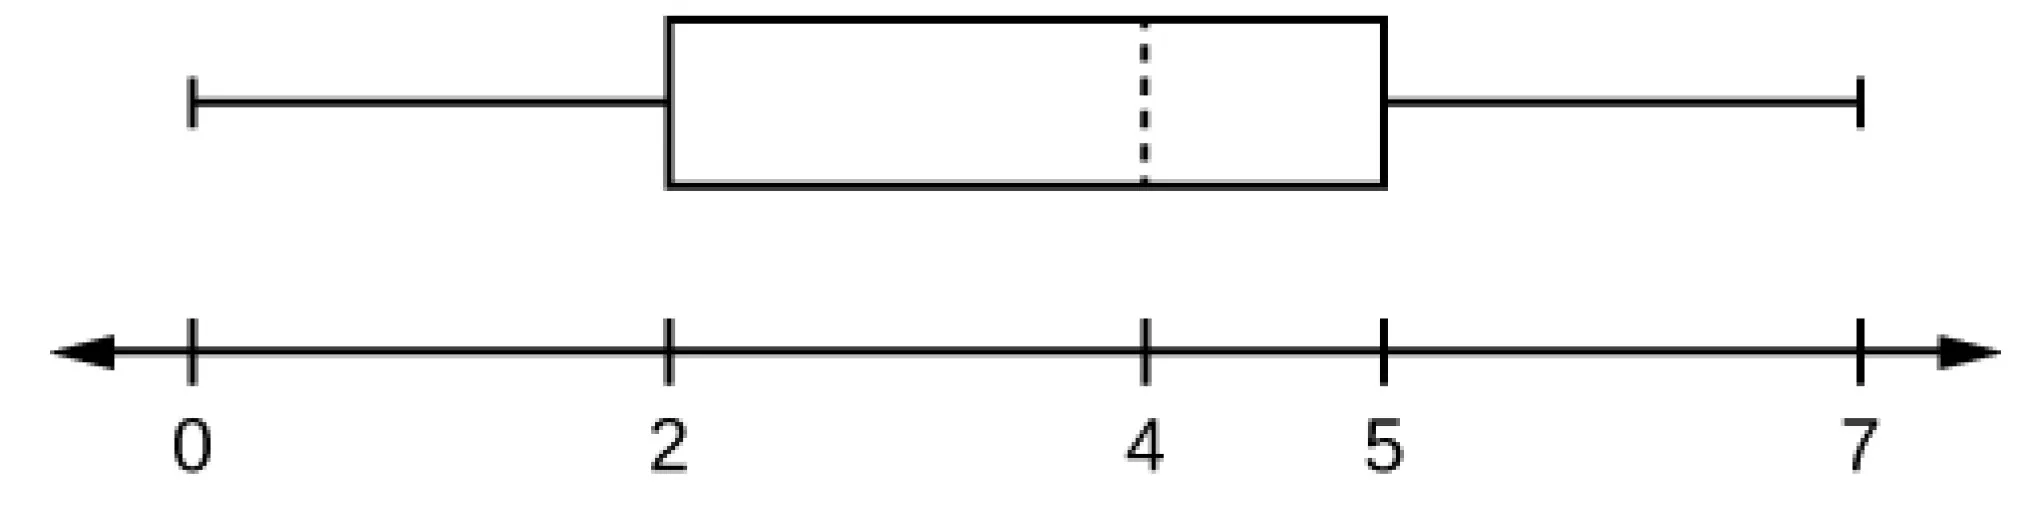 Se trata de un diagrama de caja y bigotes sobre una línea numérica de 0 a 7. El bigote izquierdo va desde el mínimo, 0, hasta el cuartil inferior, 2. La caja va desde el cuartil inferior, 2, hasta el cuartil superior, 5. Una línea discontinua marca la mediana en 4. El bigote de la derecha va de 5 al valor máximo de 7.